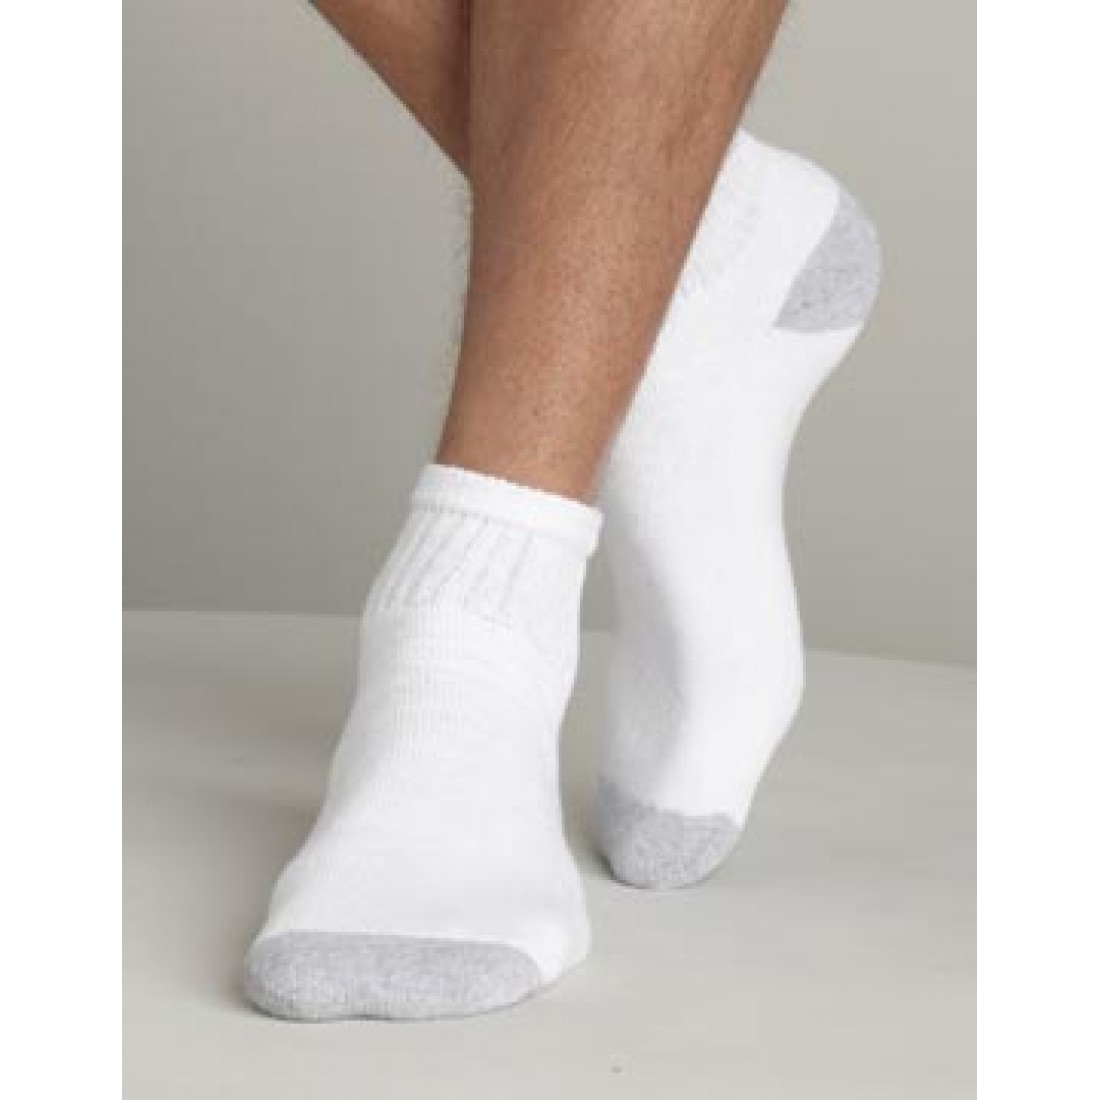 Раб носочки. Lindner Socks носки мужские. Белые носки. Белые носки мужские. Носки мужские белые короткие.